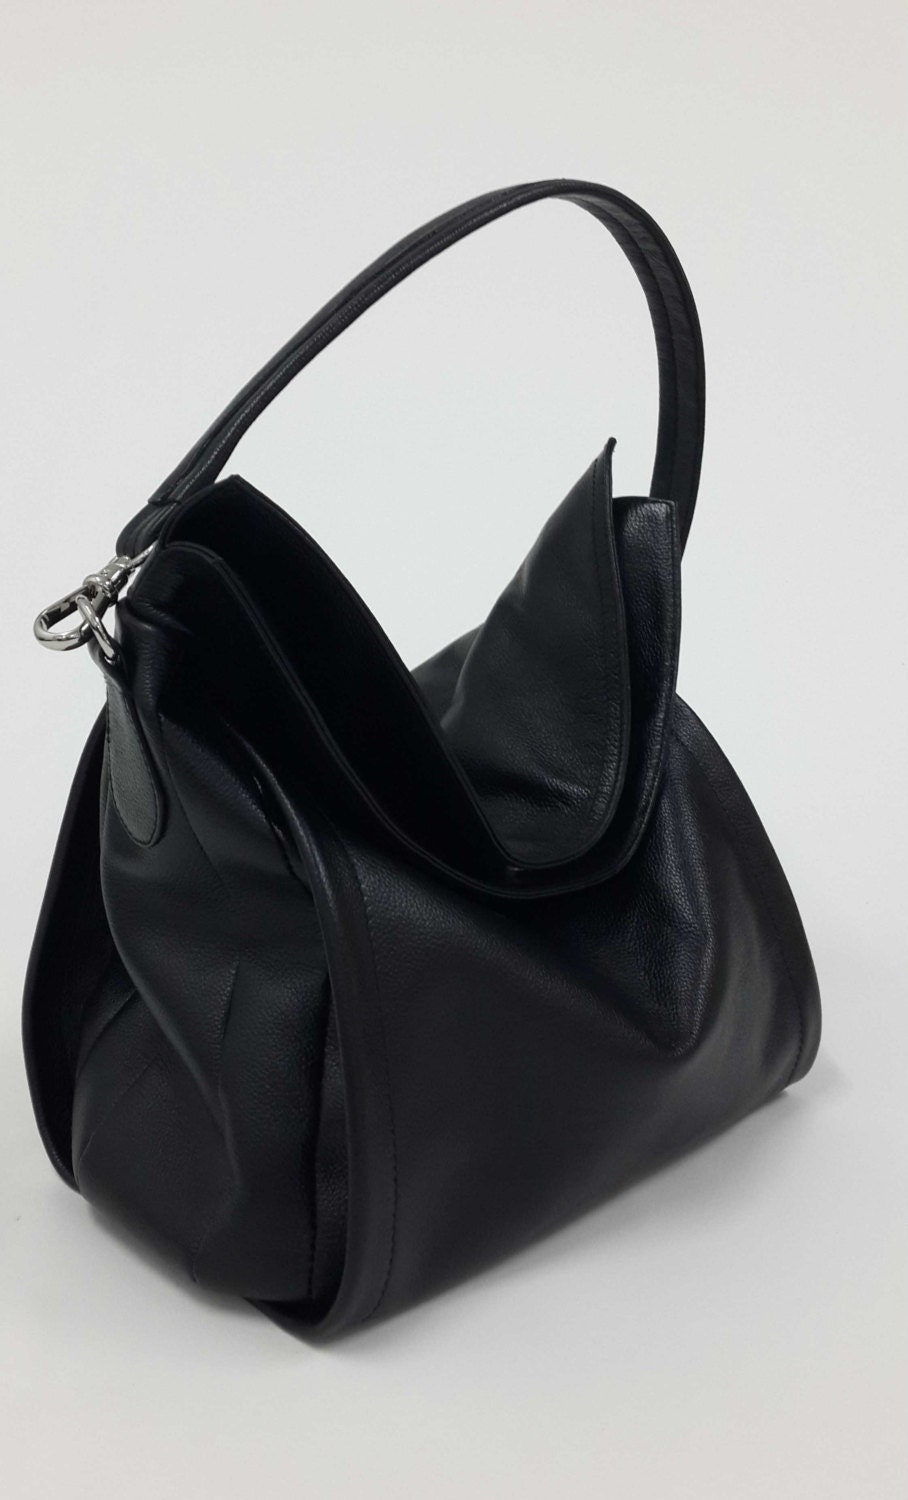 Black soft leather shoulder bag Hobo bag